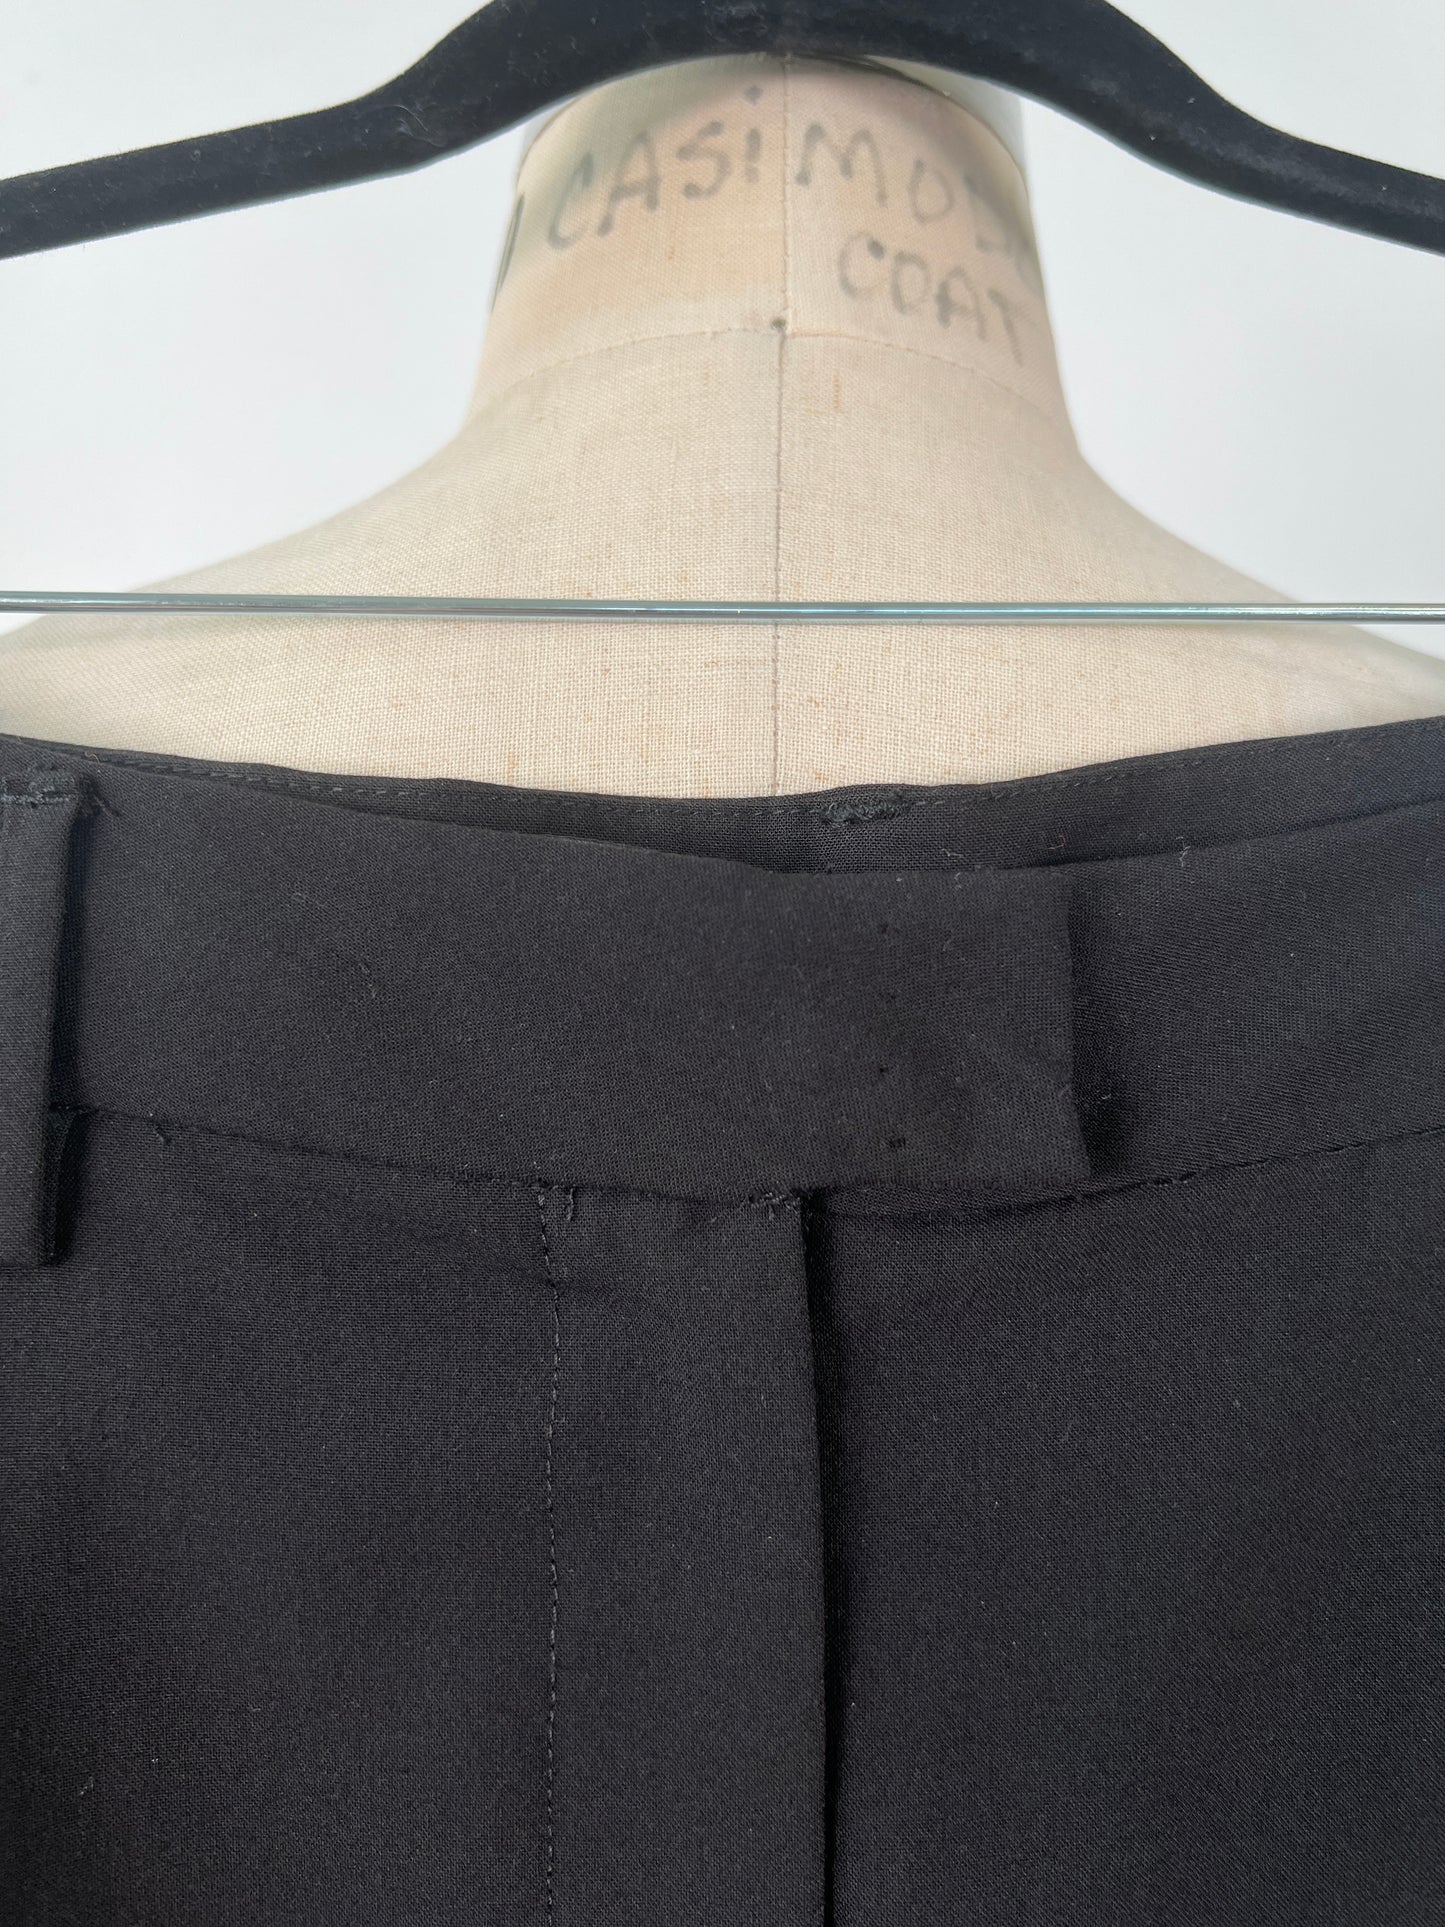 Pantalon noir à coupe droite à boutons décoratifs (6)